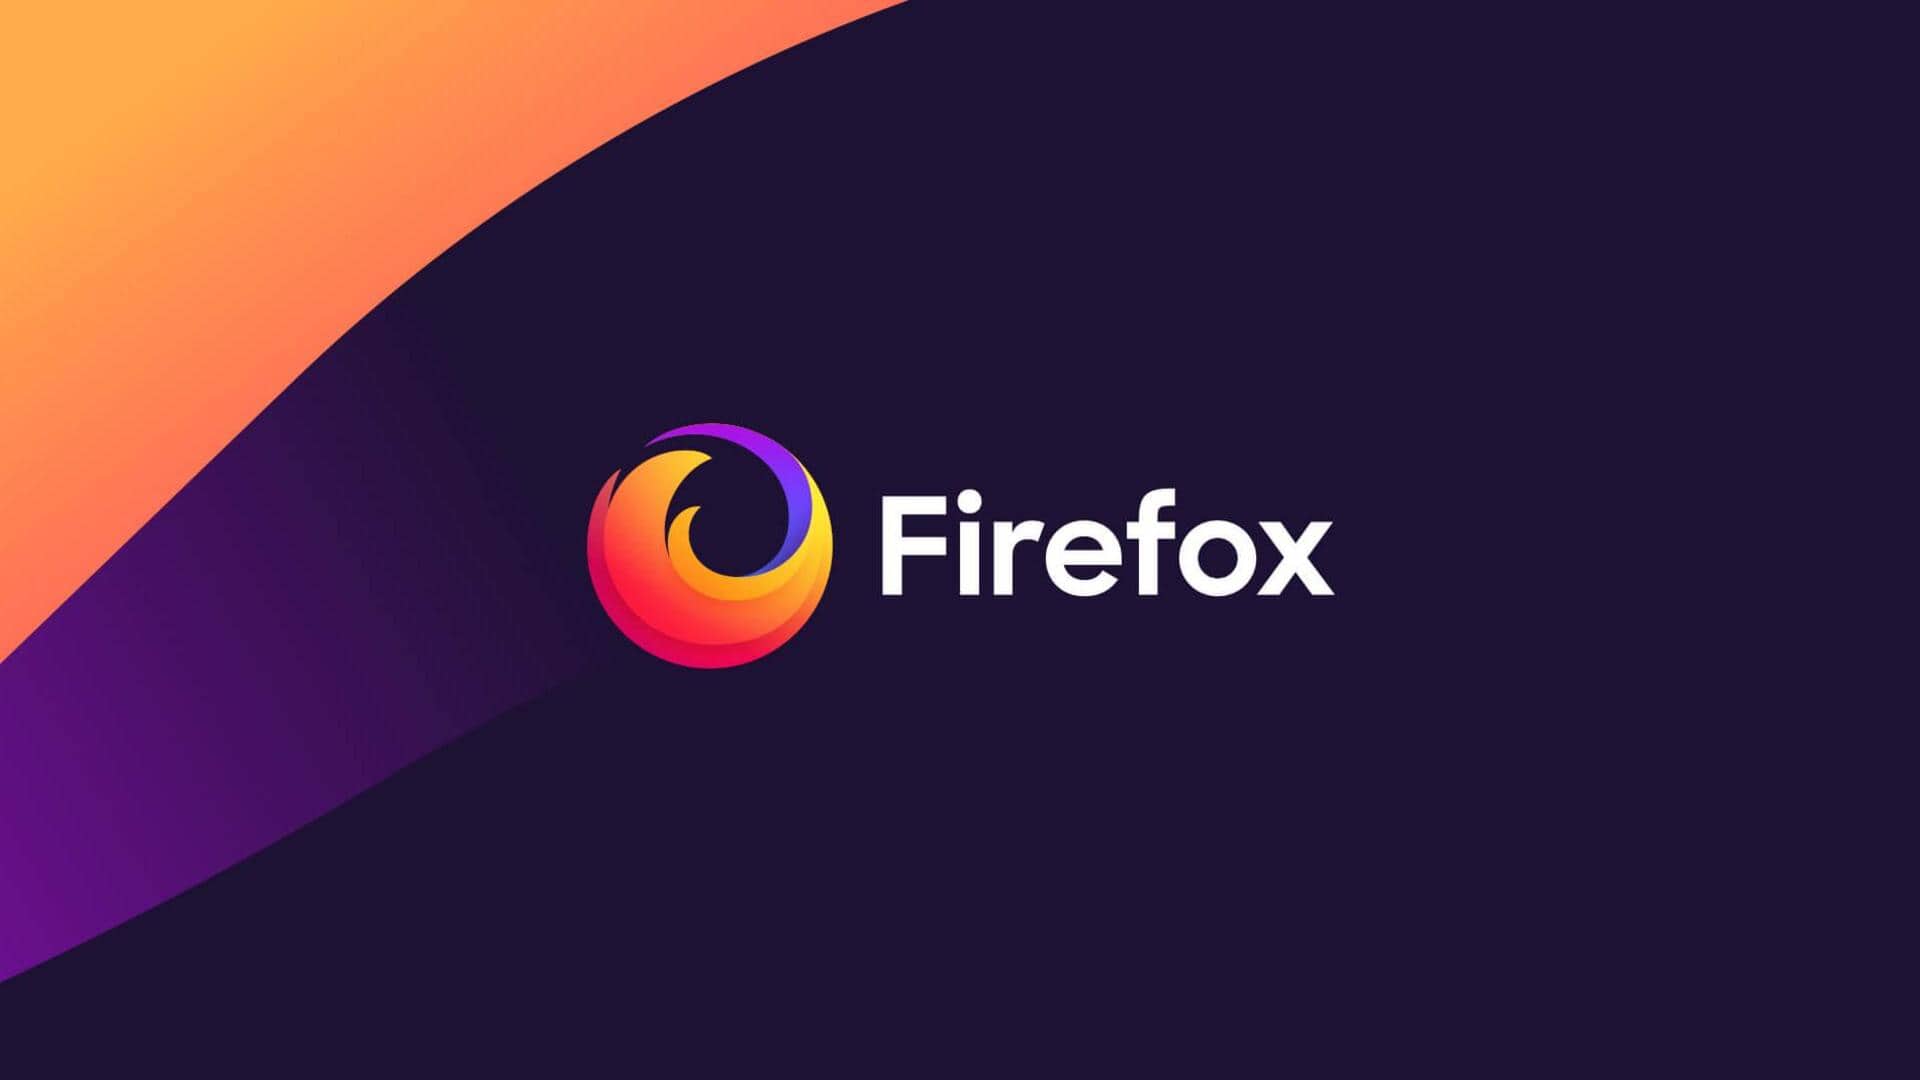 Mozilla Firefox உலாவியில் பாதுகாப்புக் குறைபாடுகள்? எச்சரிக்கை விடுத்த CERT-In